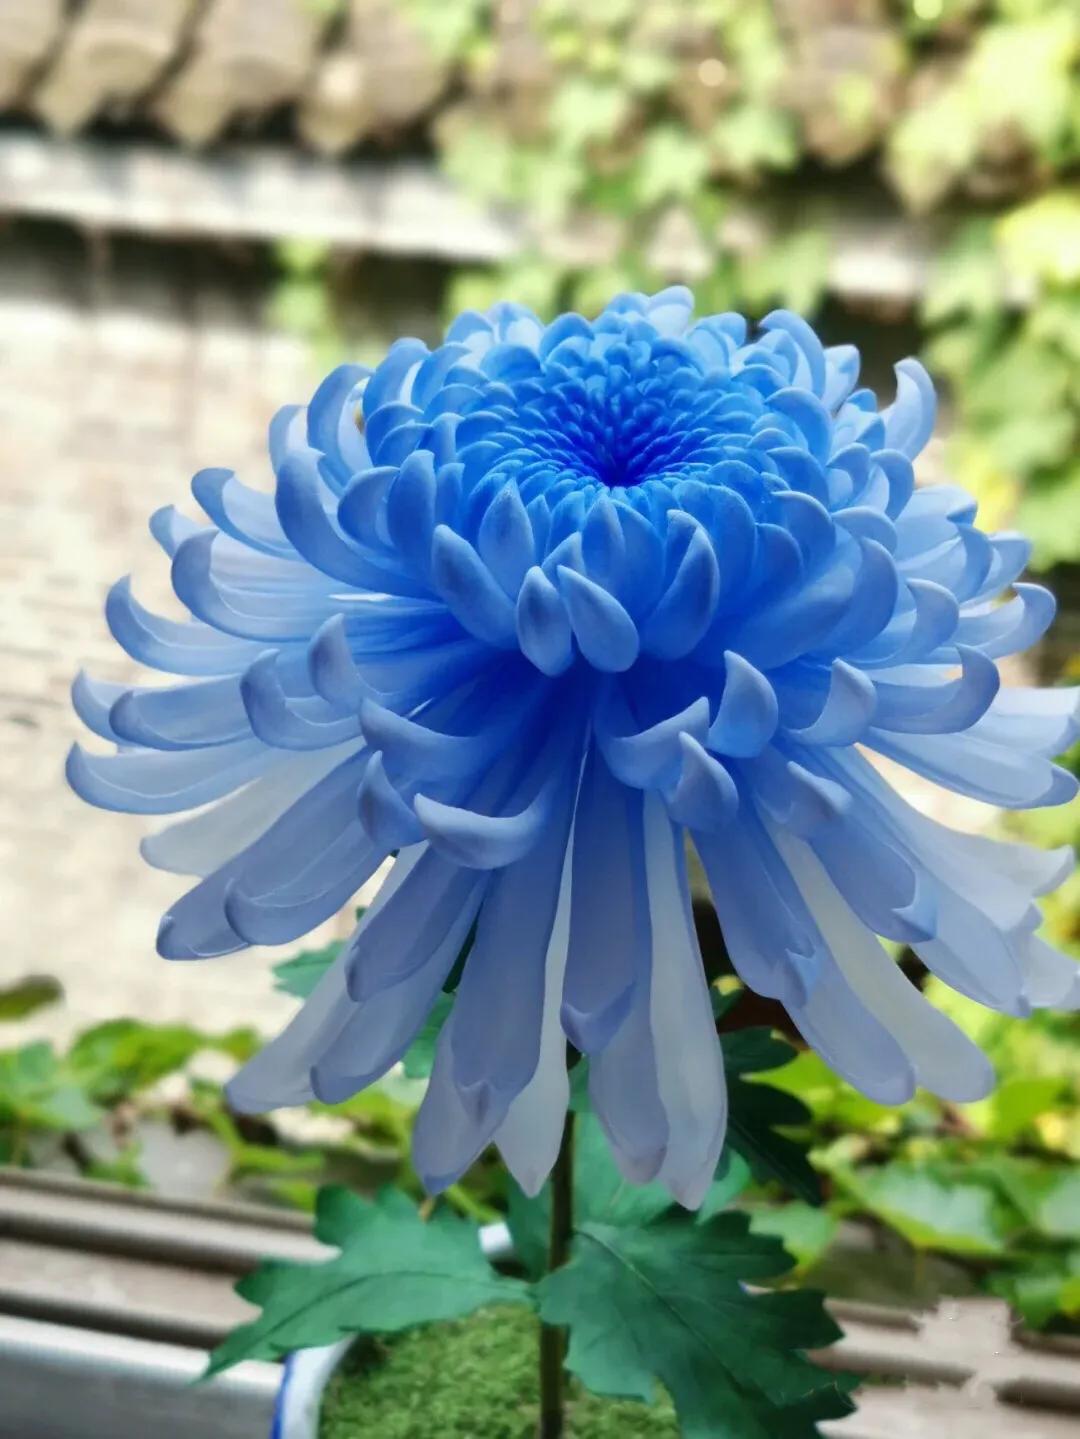 蓝色菊花花语图片